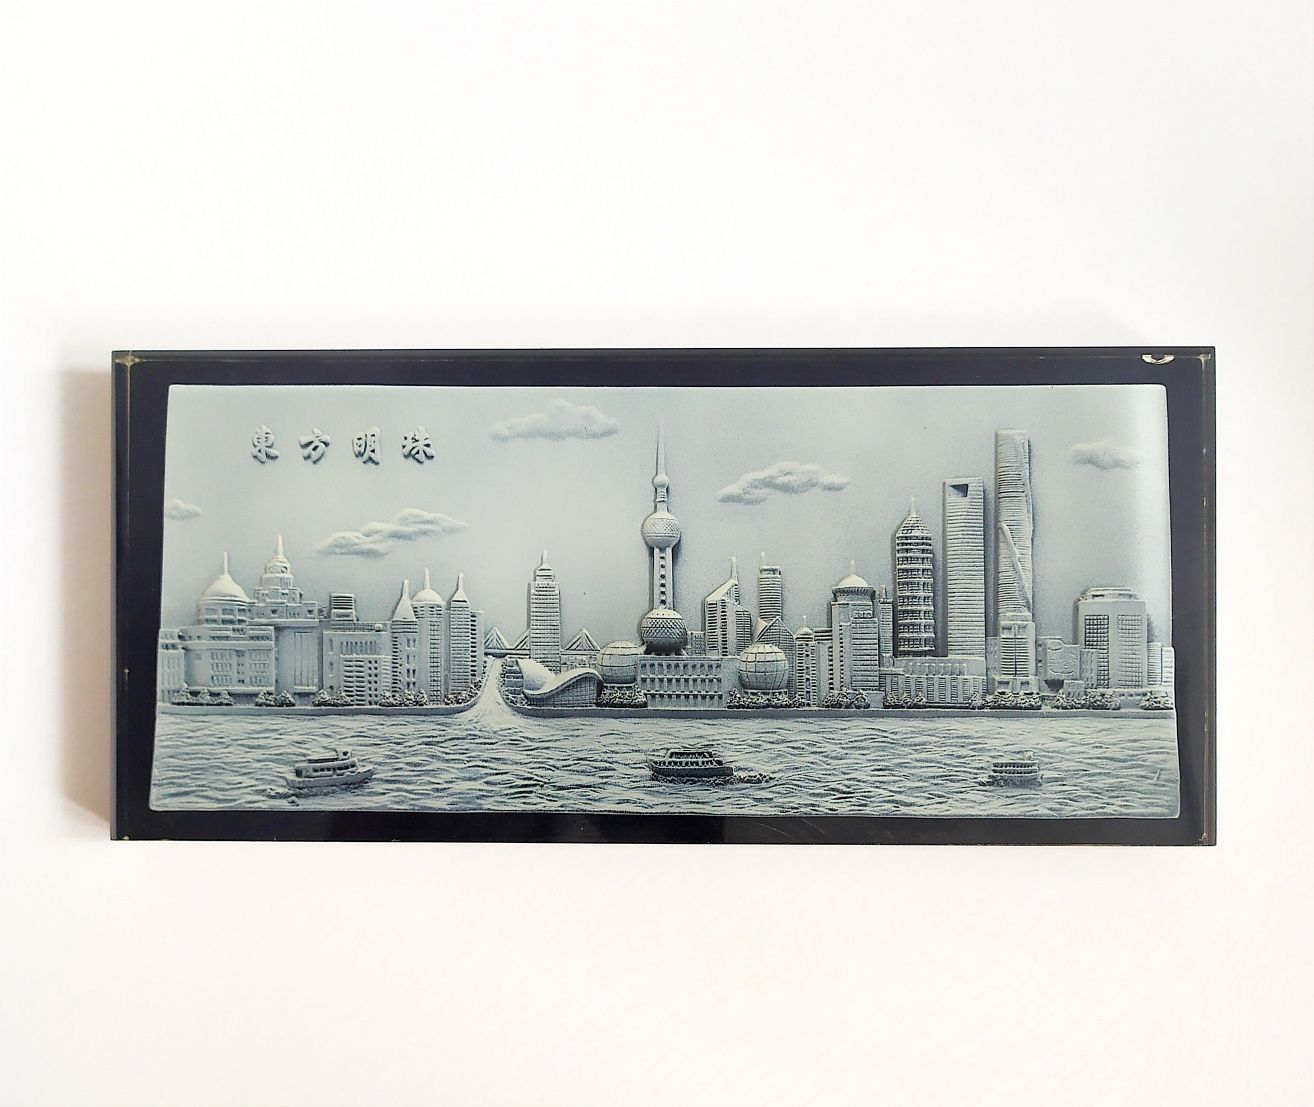 ШАНХАЙ СТЕКЛО Картина китайская башня вышка городская набережная